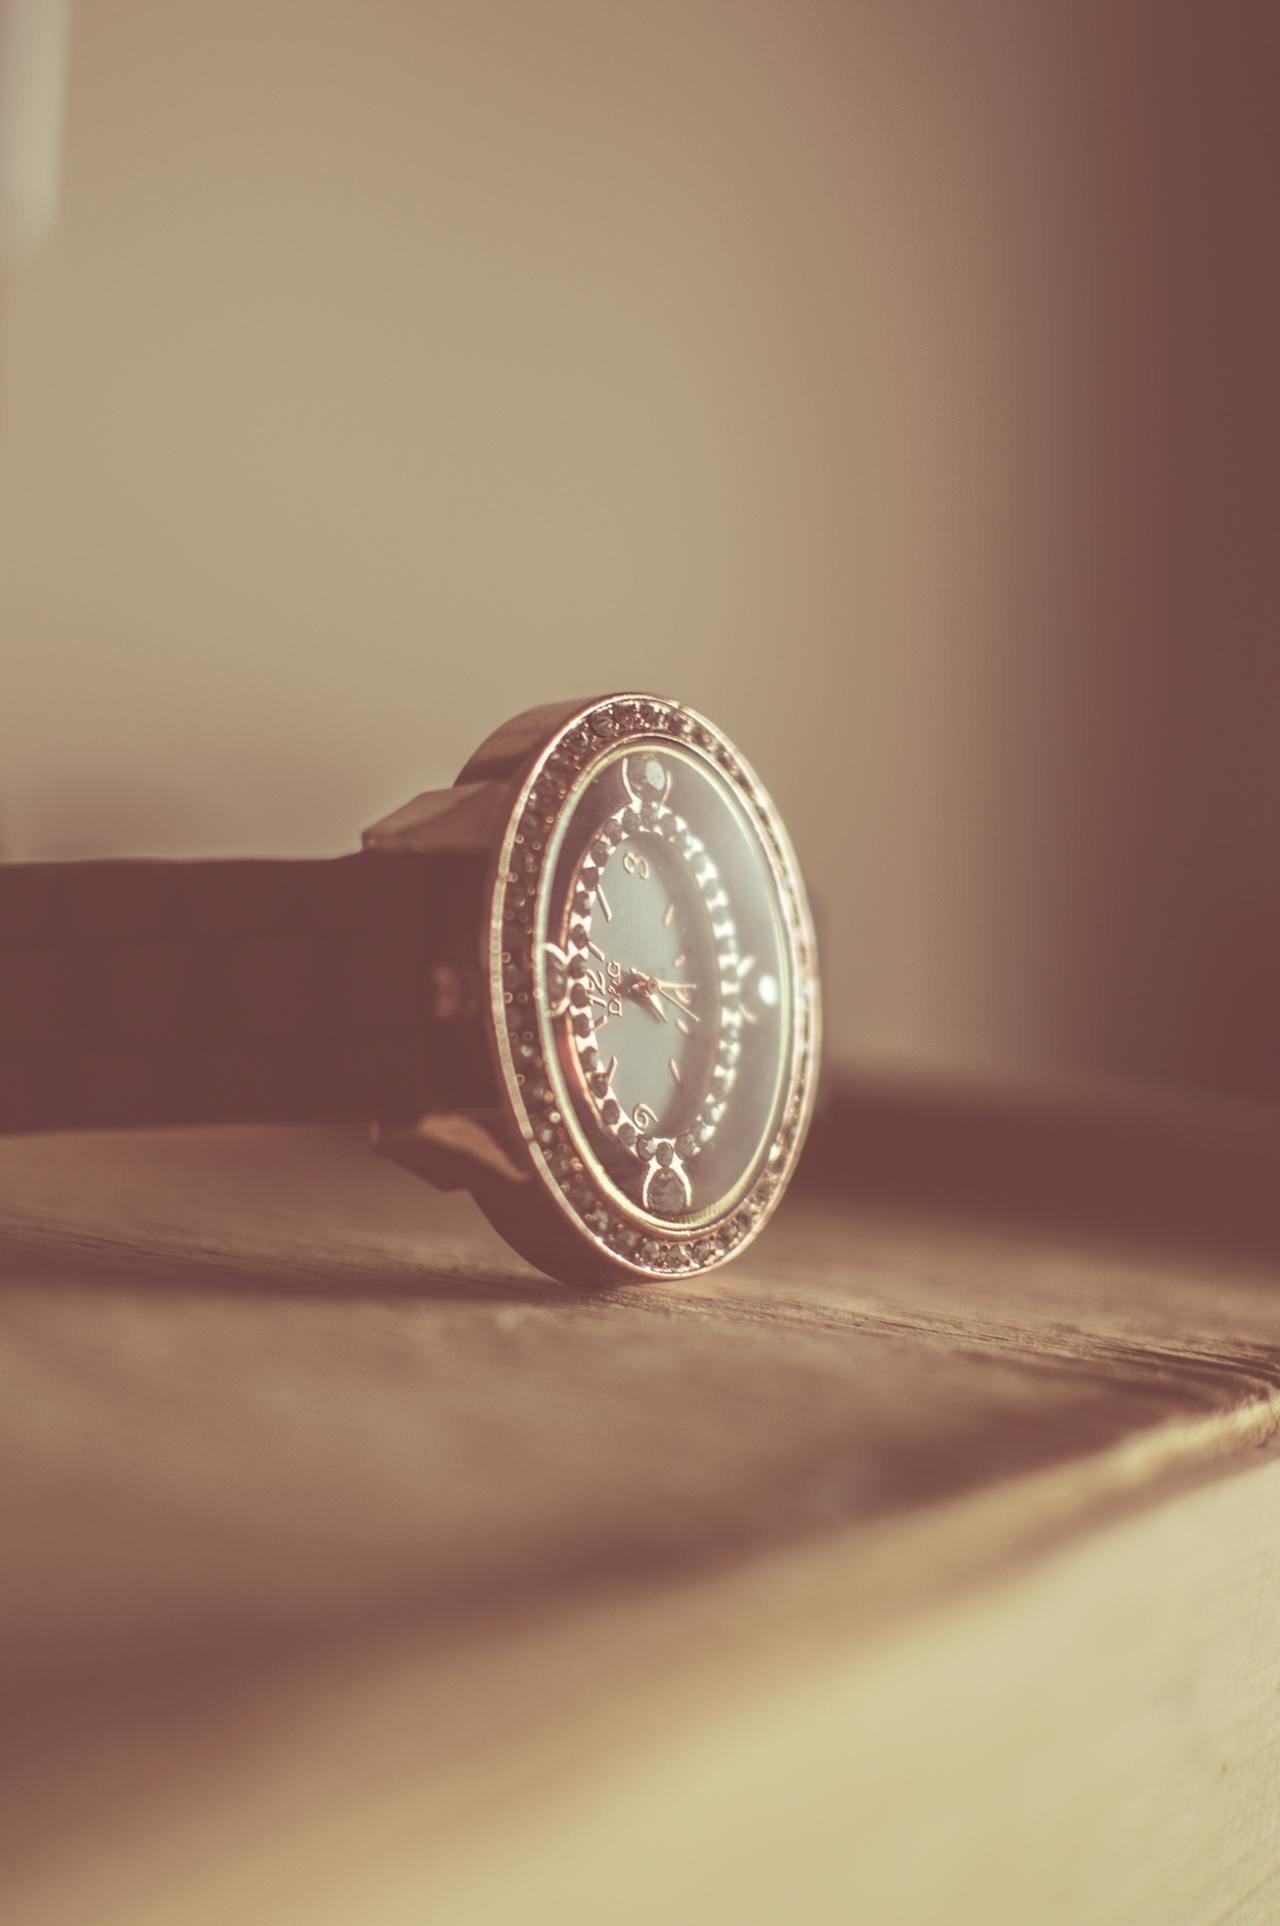 vintage wristwatches